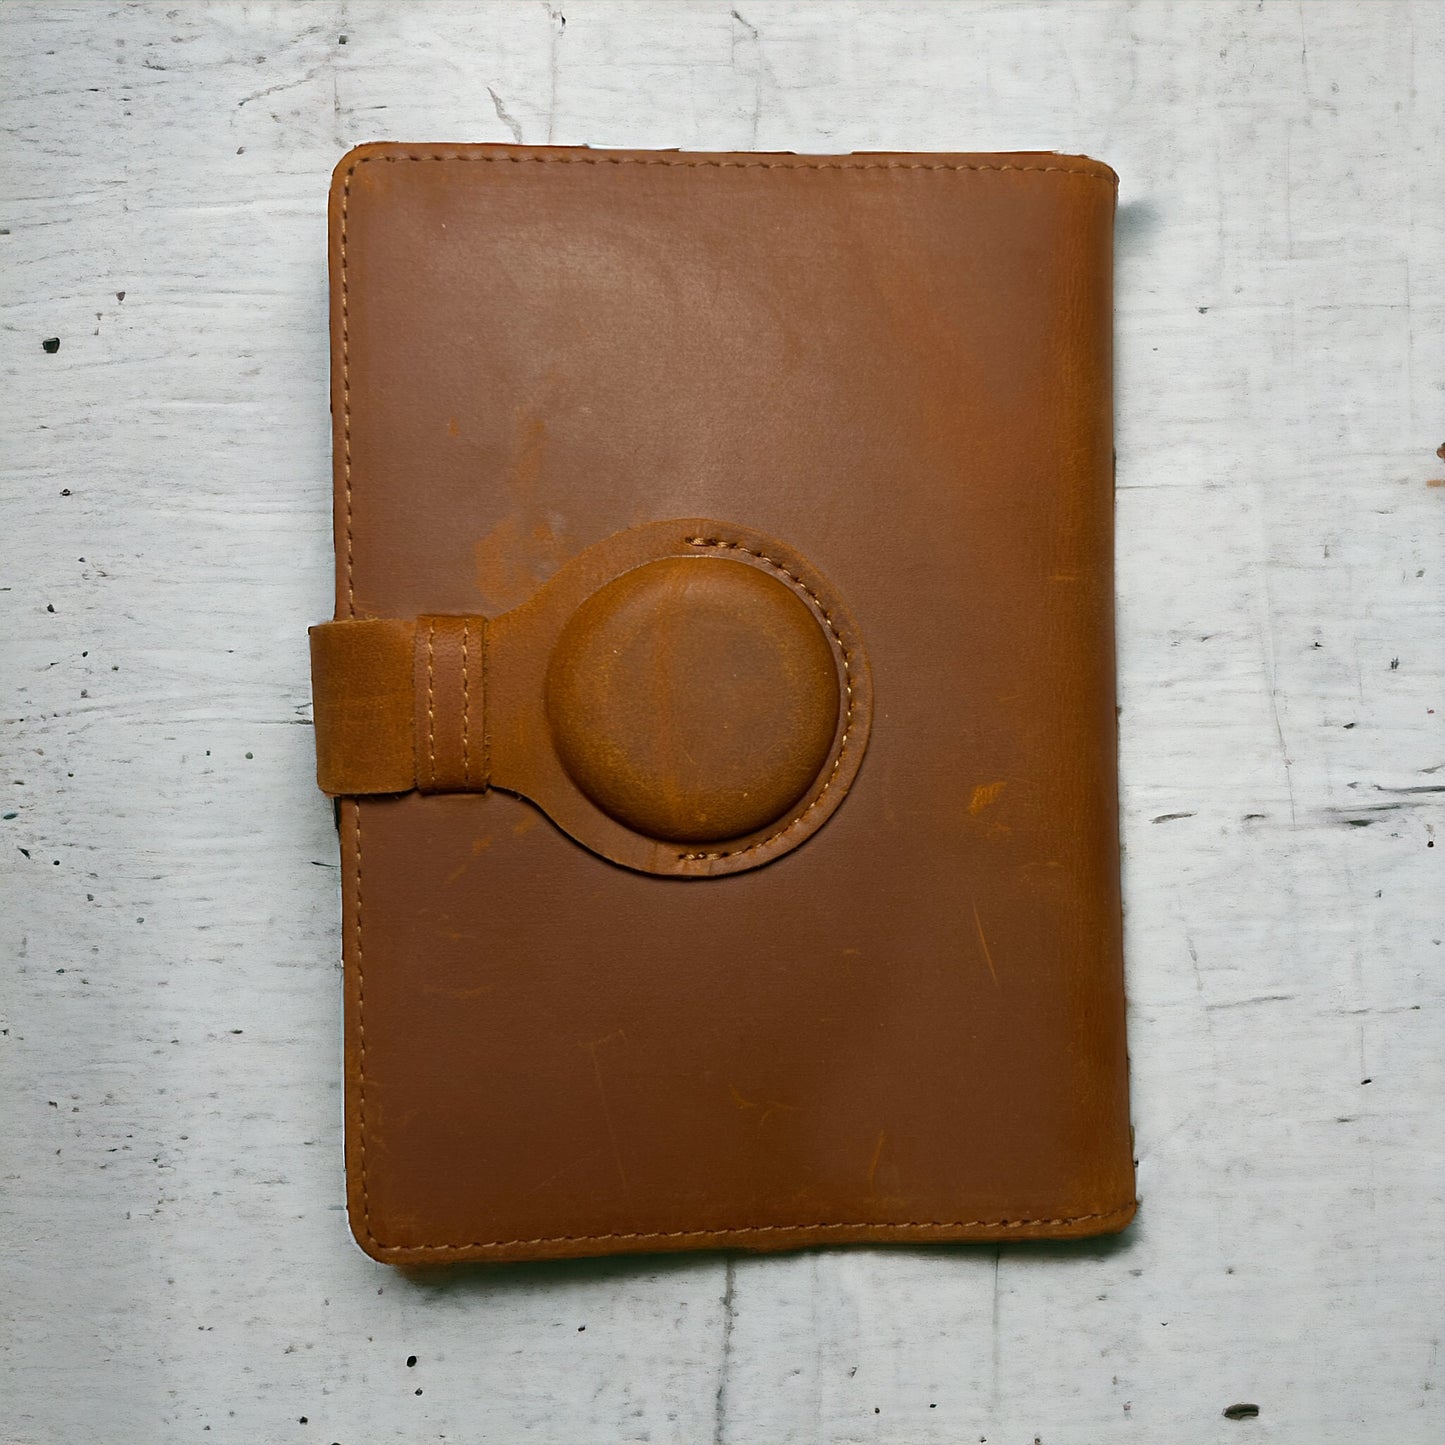 Genuine Leather AirTag Passport Holder (Brown)